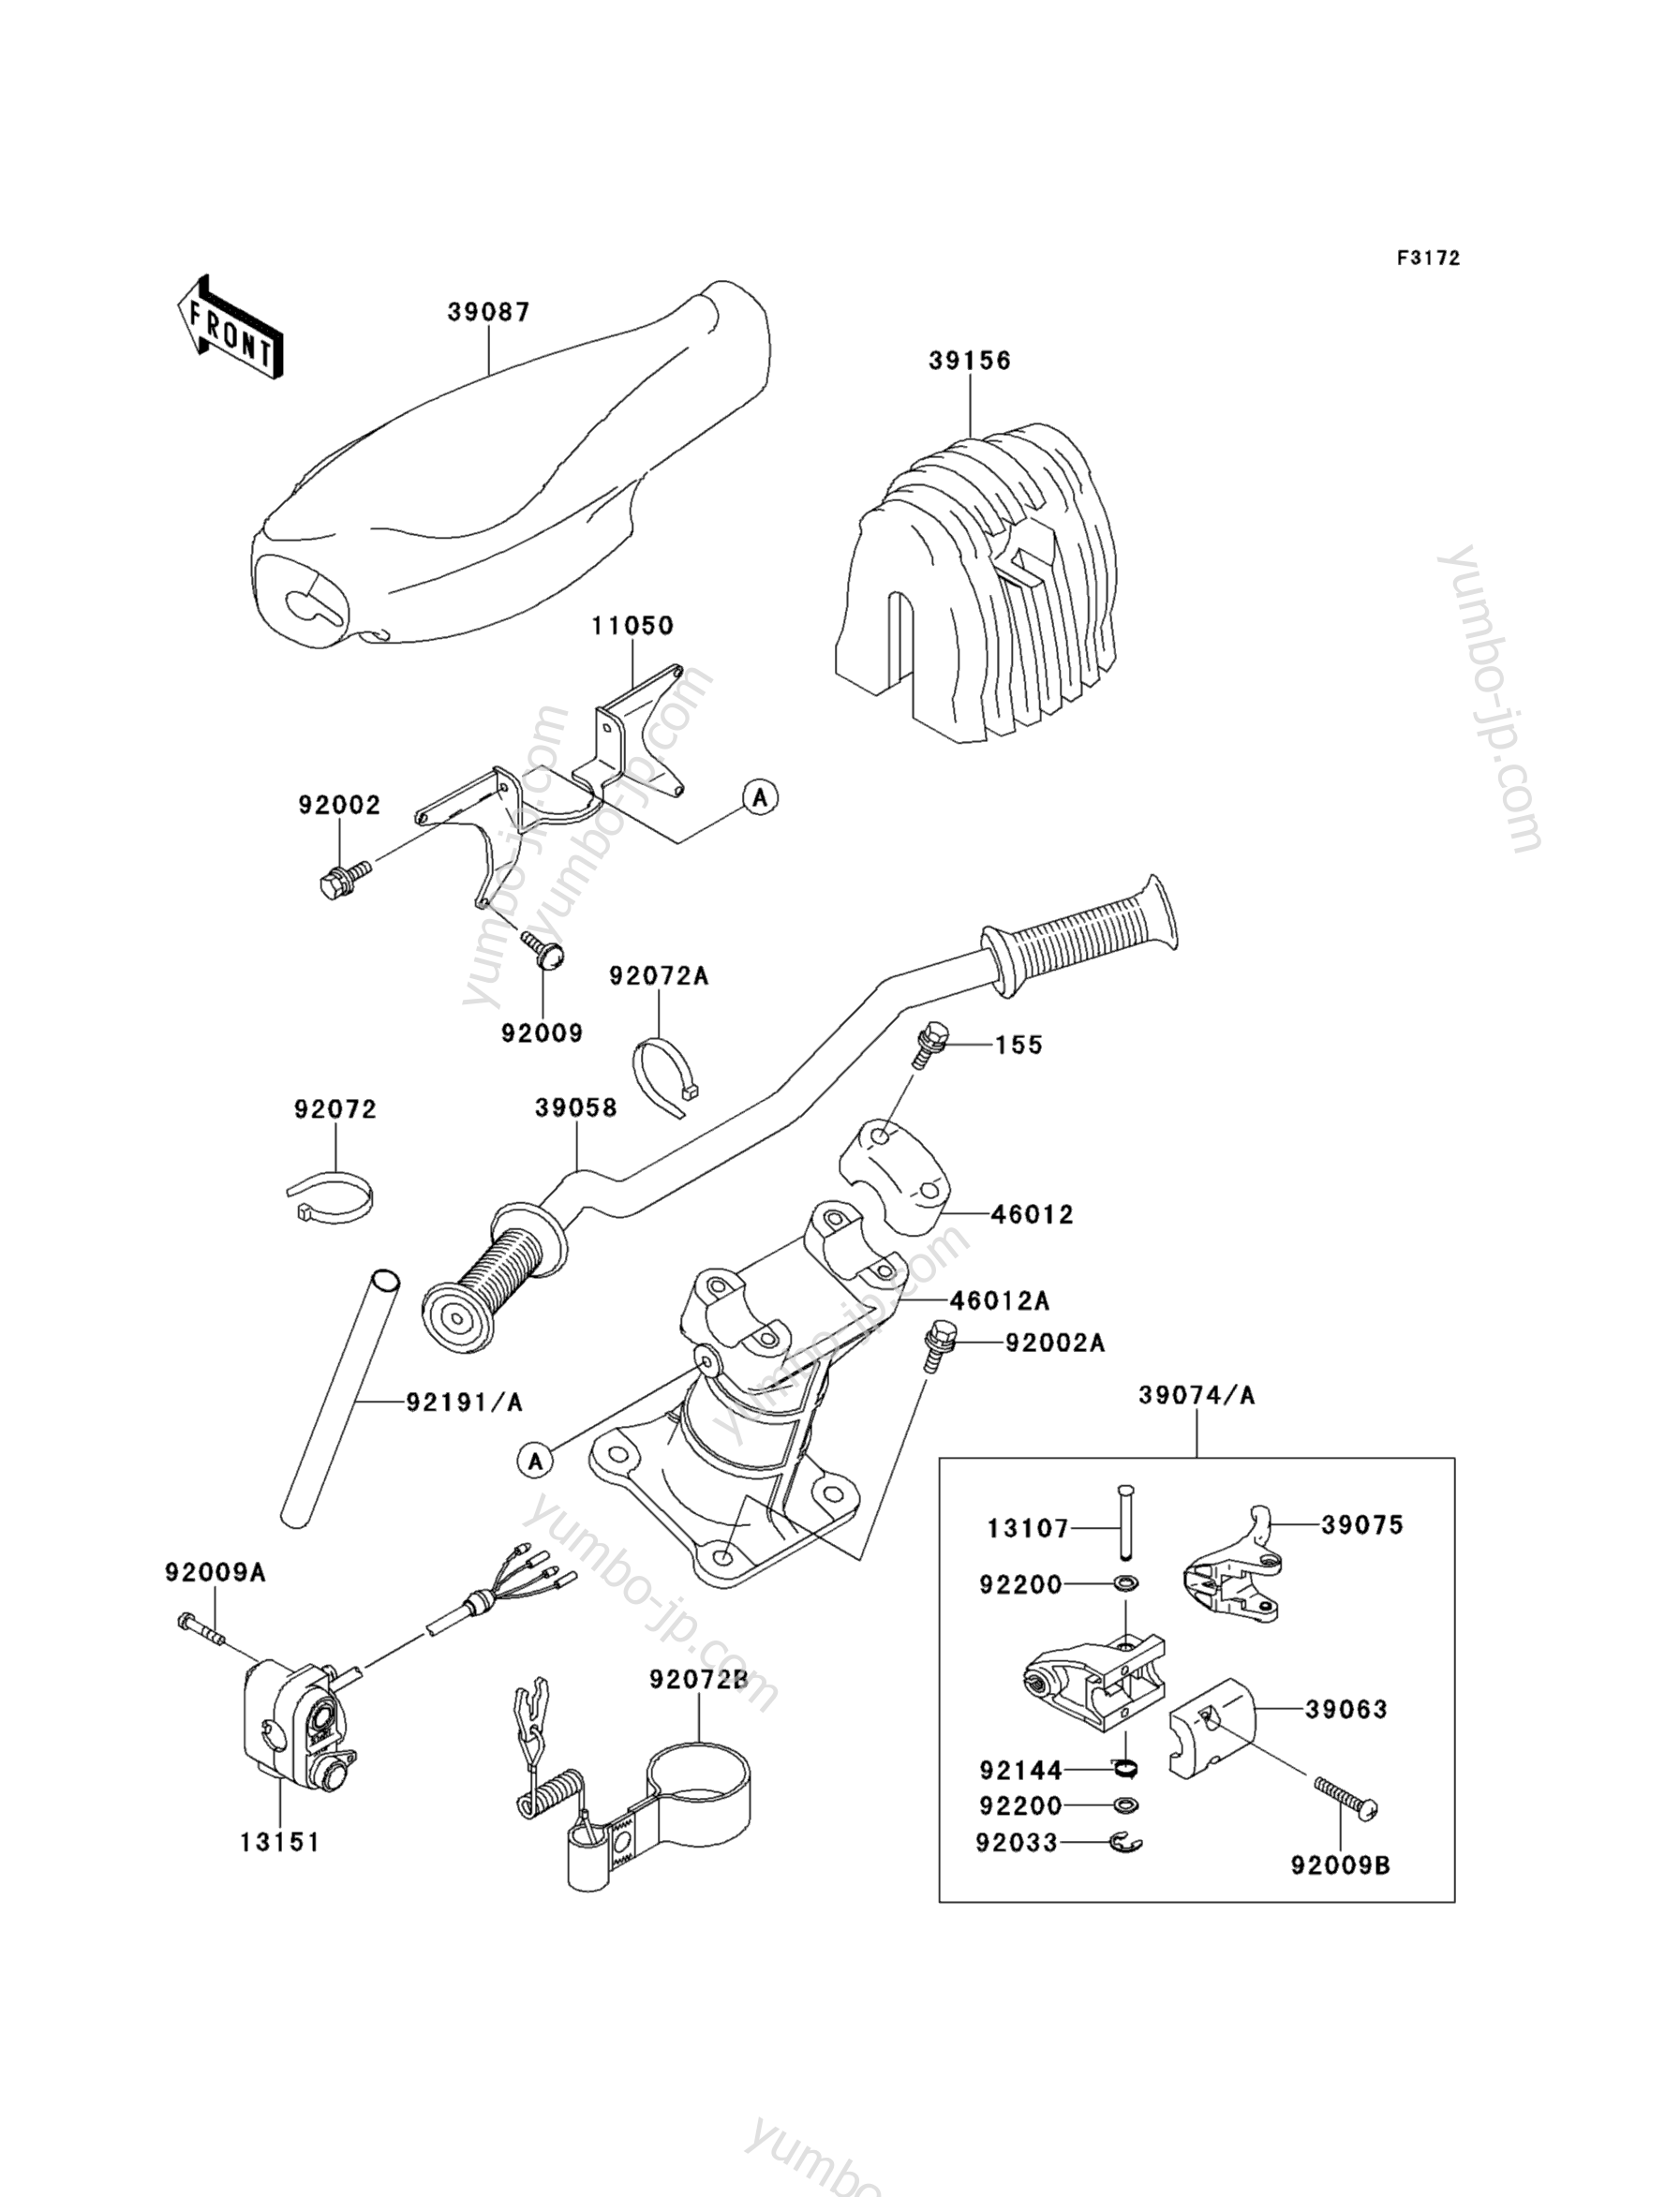 Румпель (рукоятка управления) для гидроциклов KAWASAKI JET SKI 900 STX (JT900-B2) 2000 г.